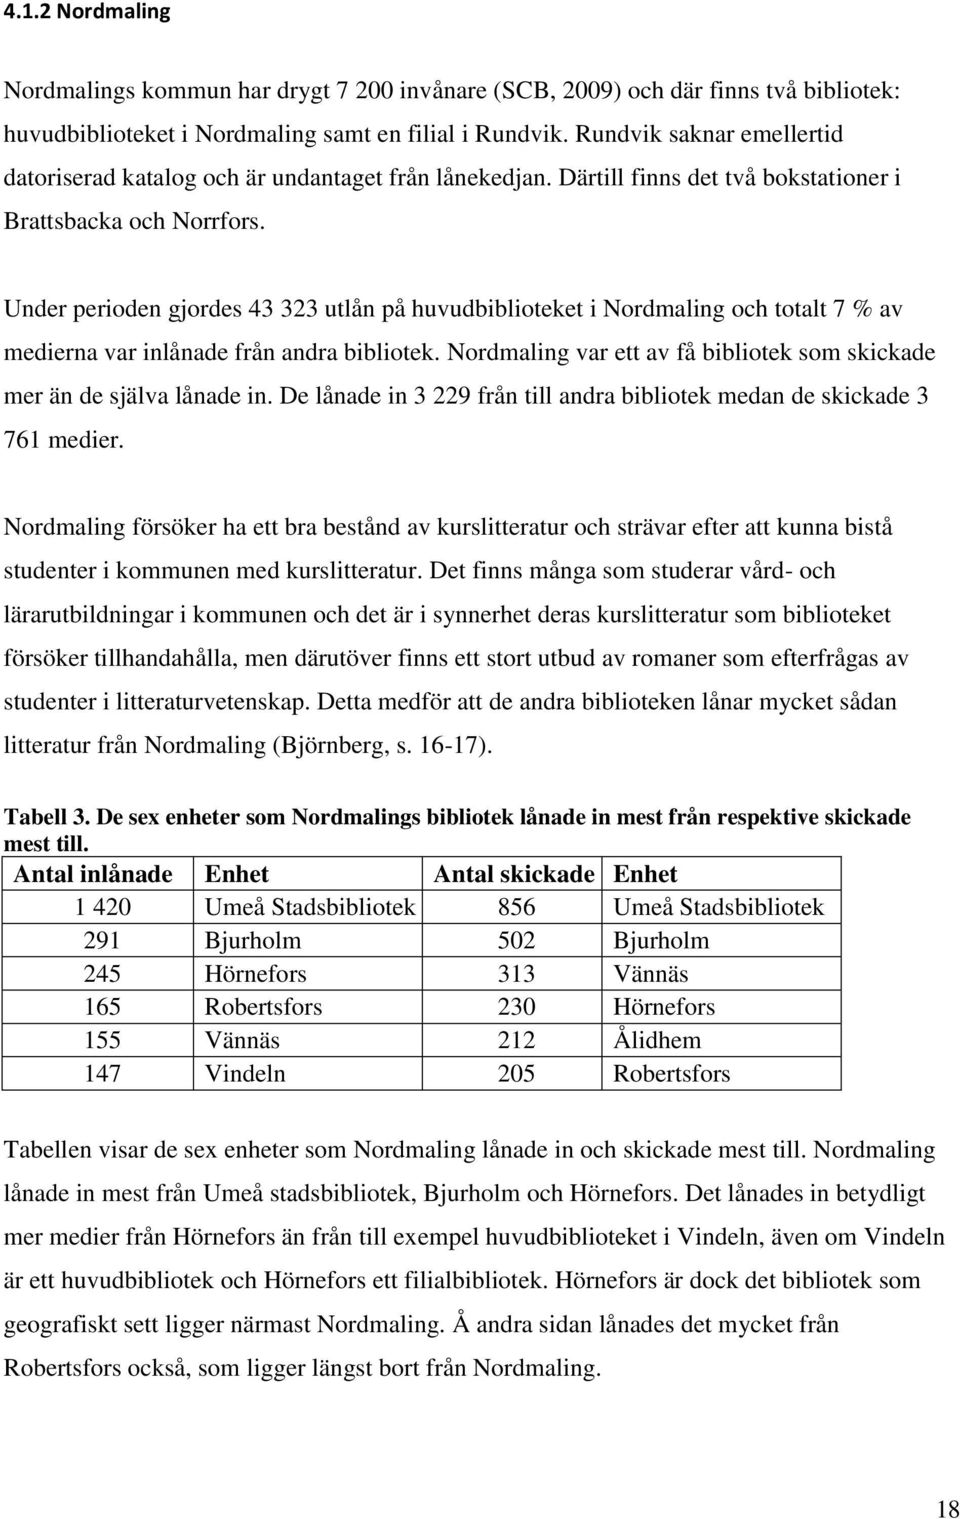 Under perioden gjordes 43 323 utlån på huvudbiblioteket i Nordmaling och totalt 7 % av medierna var inlånade från andra bibliotek.